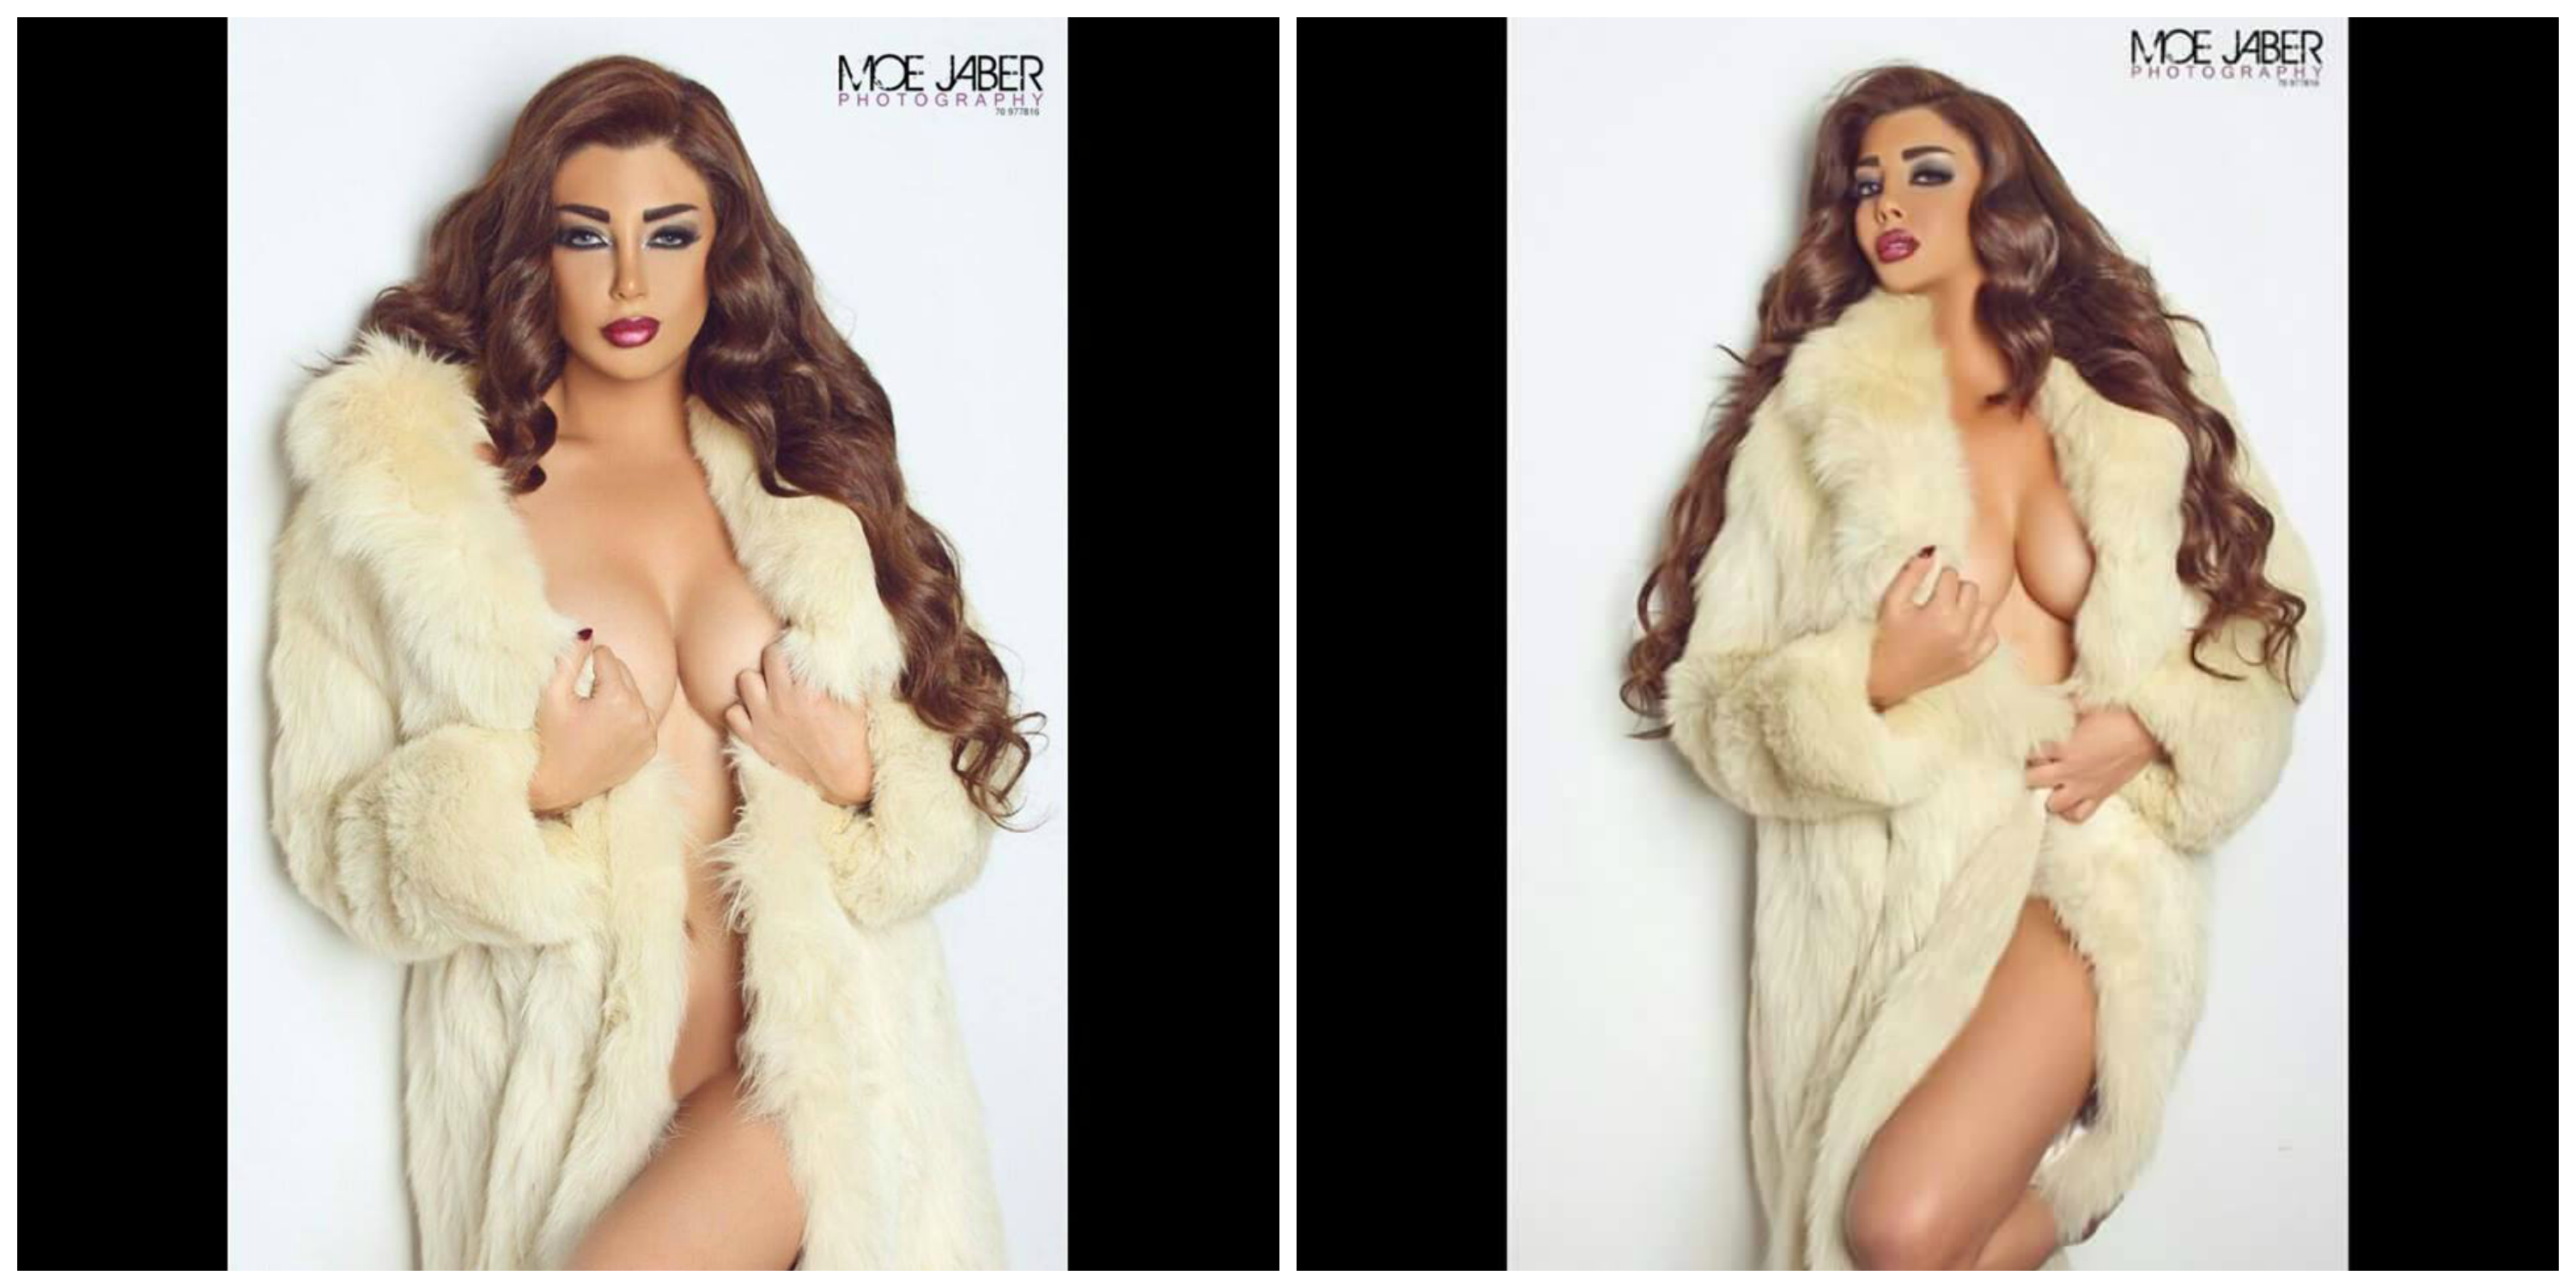 Haifa wahbi sex galery - Real Naked Girls